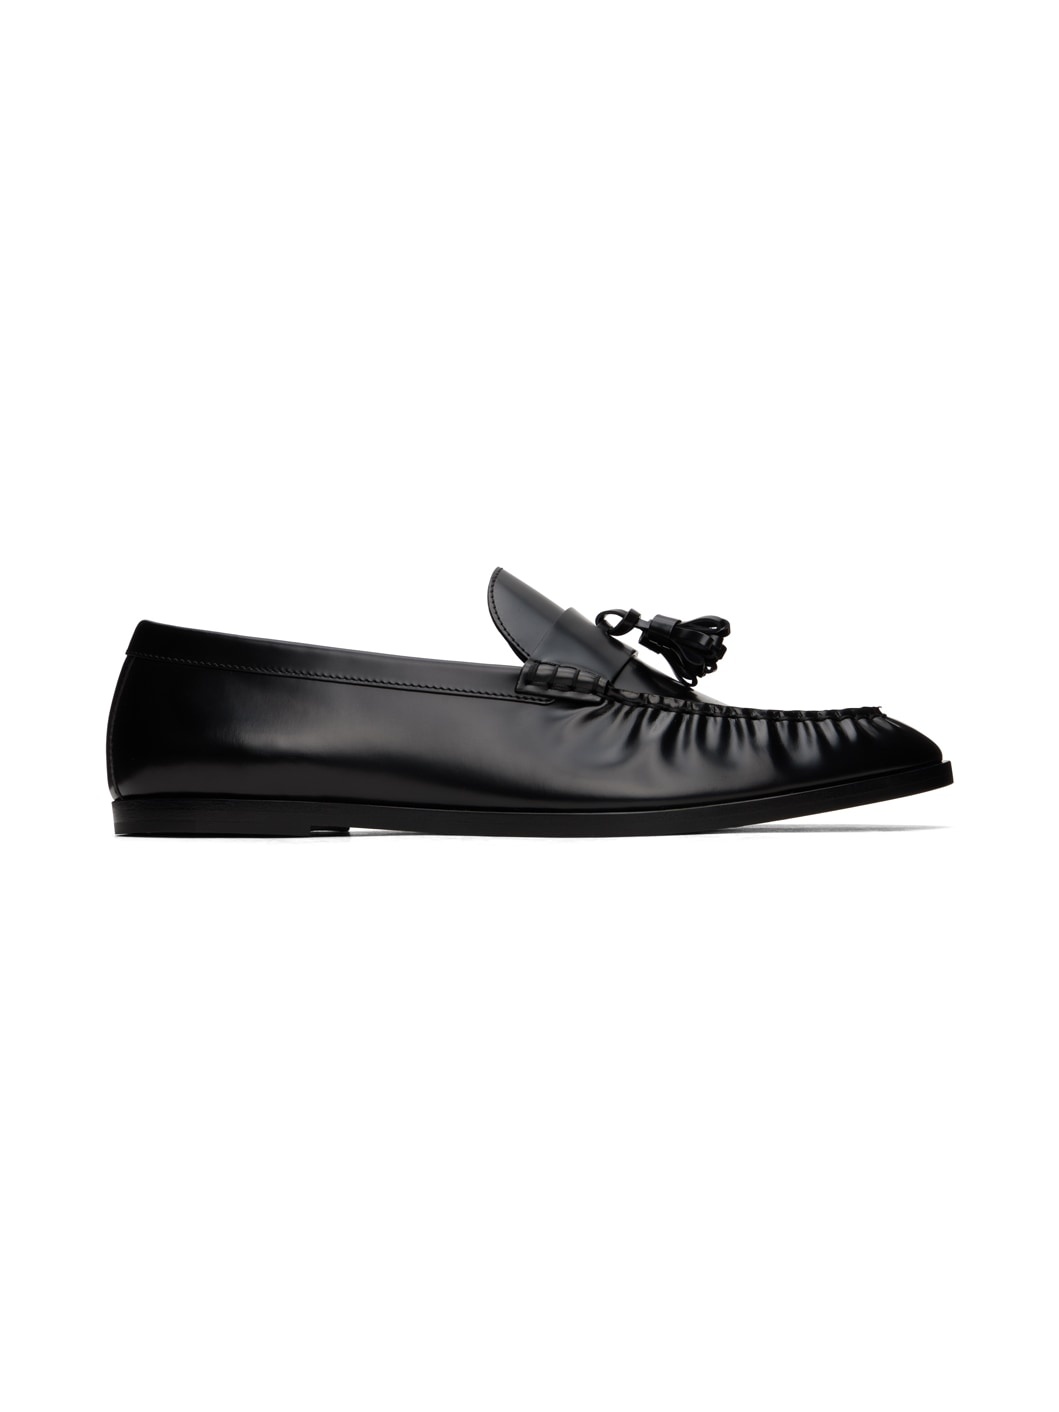 Black Tassle Loafers - 1